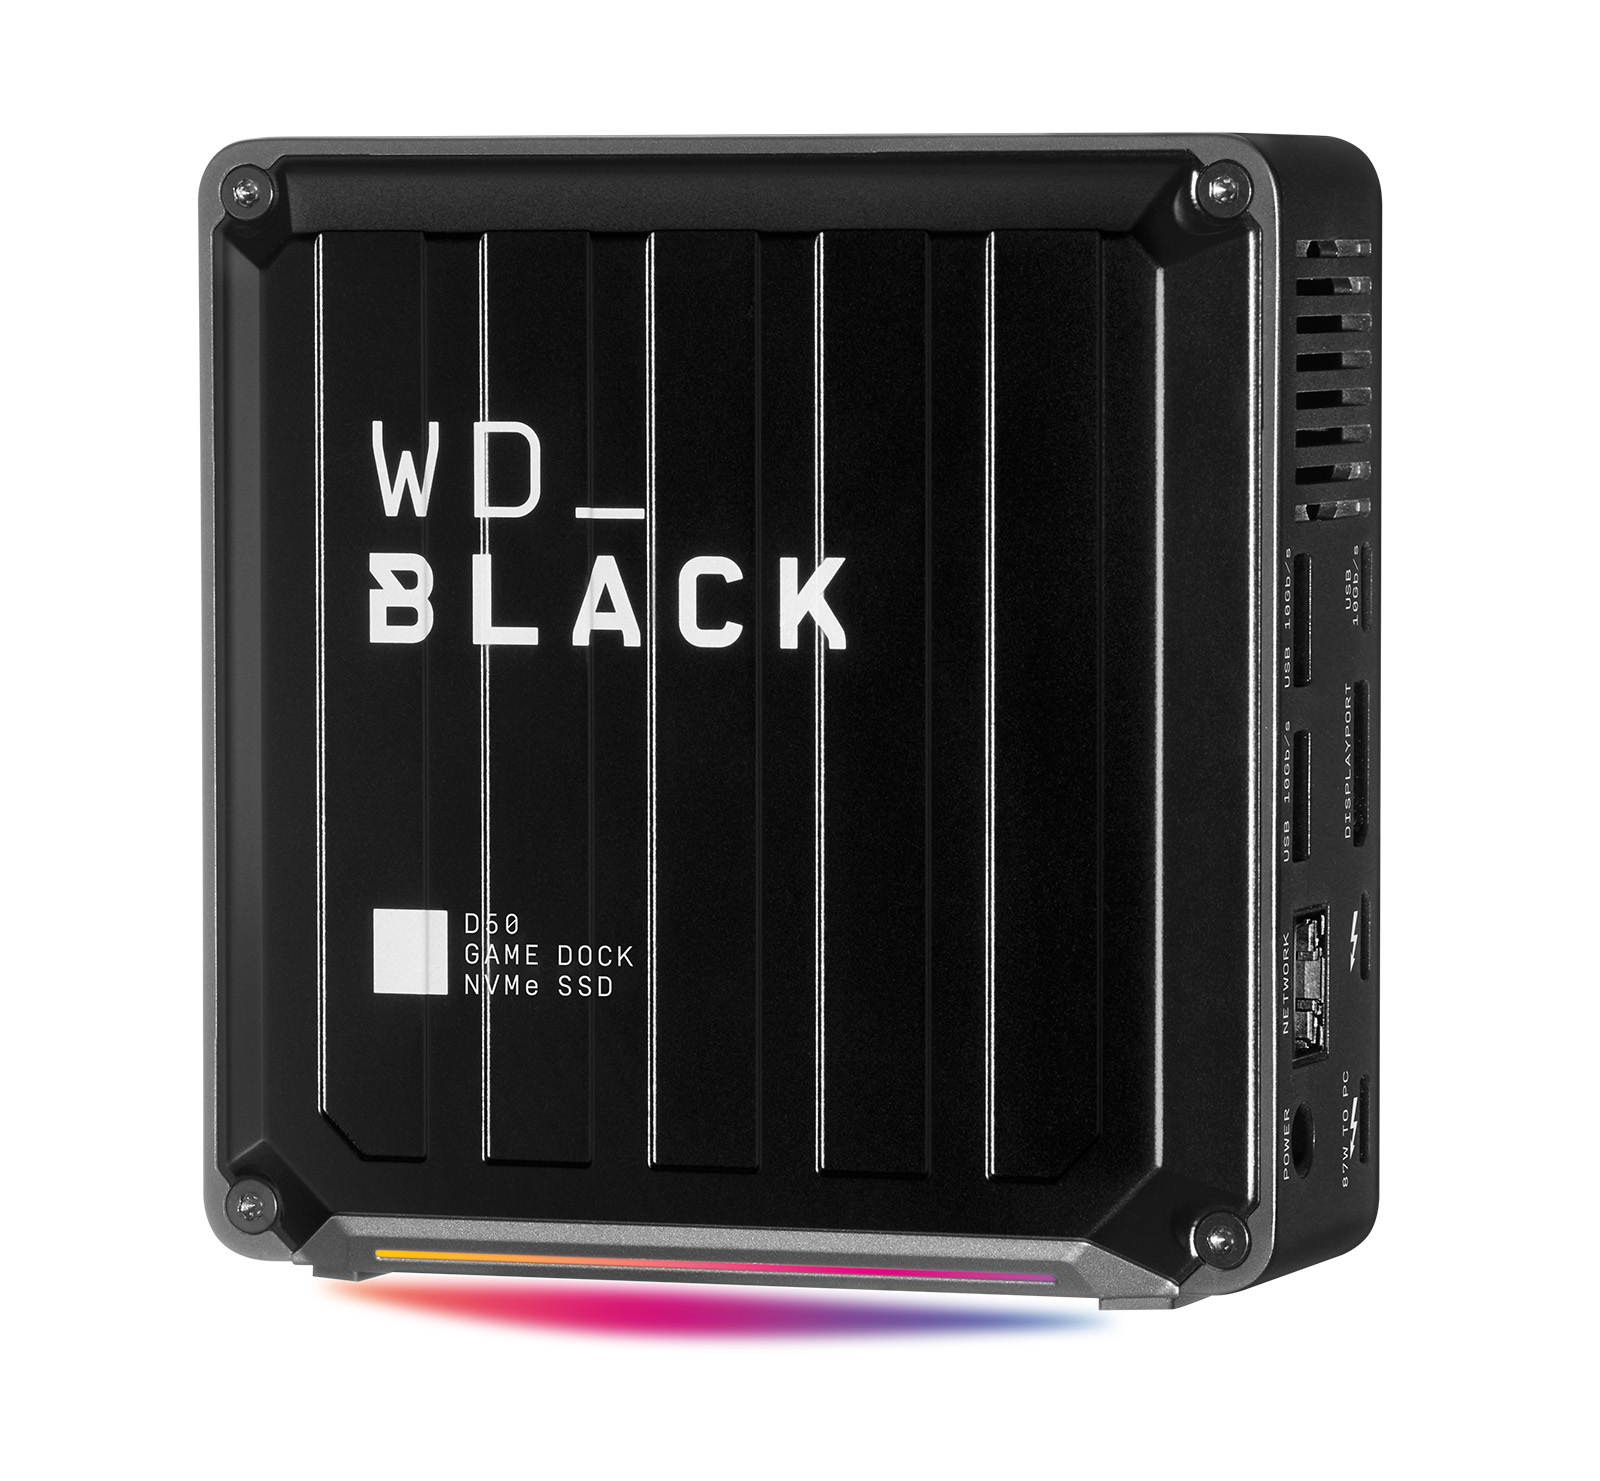 [사진7] WD_BLACK D50 게임 독 NVMe SSD (누끼).jpg